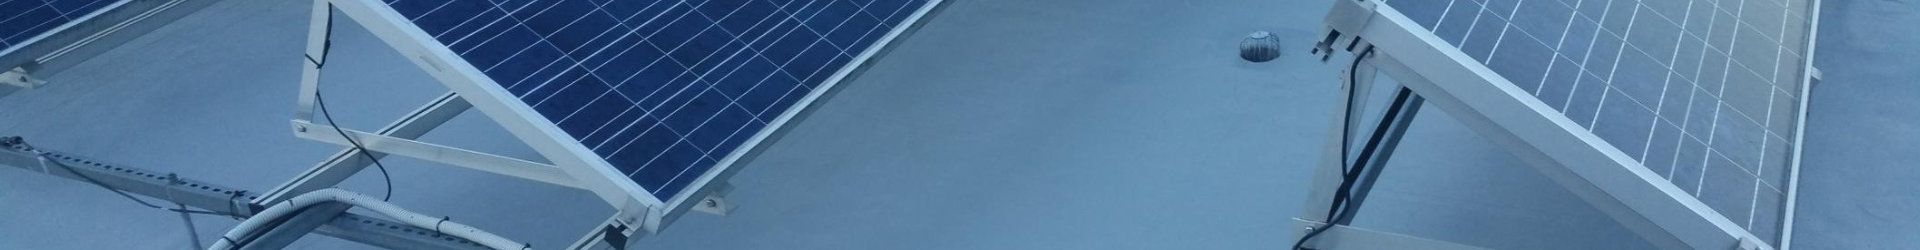 Flachdachabdichtung von Flachdächern mit Solaranlagen